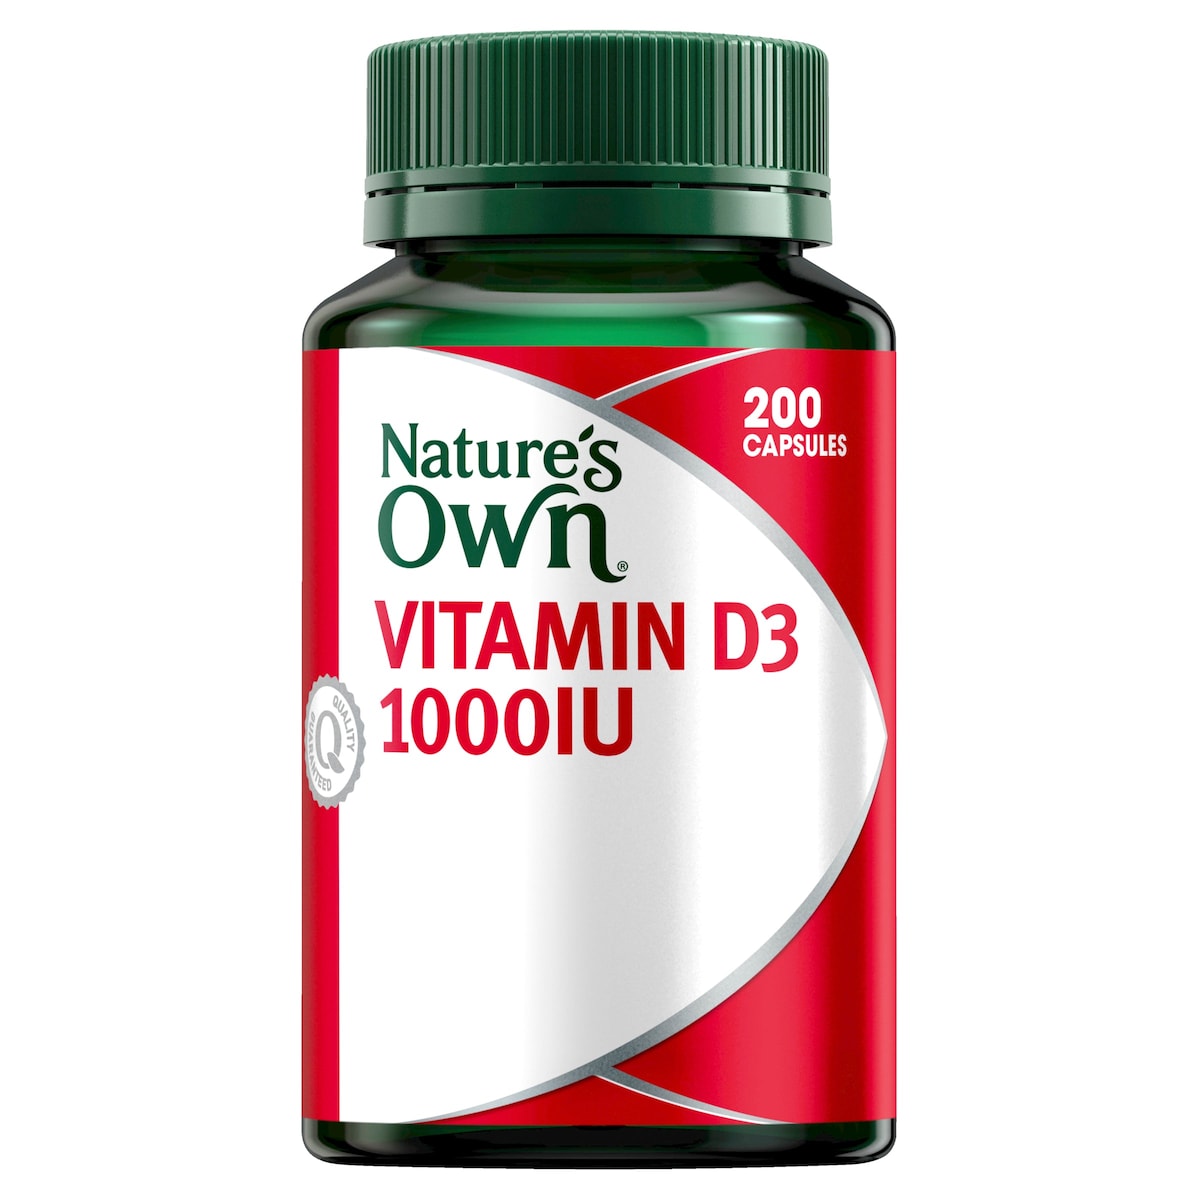 Nature's Own Vitamin D3 1000IU 200Capsules